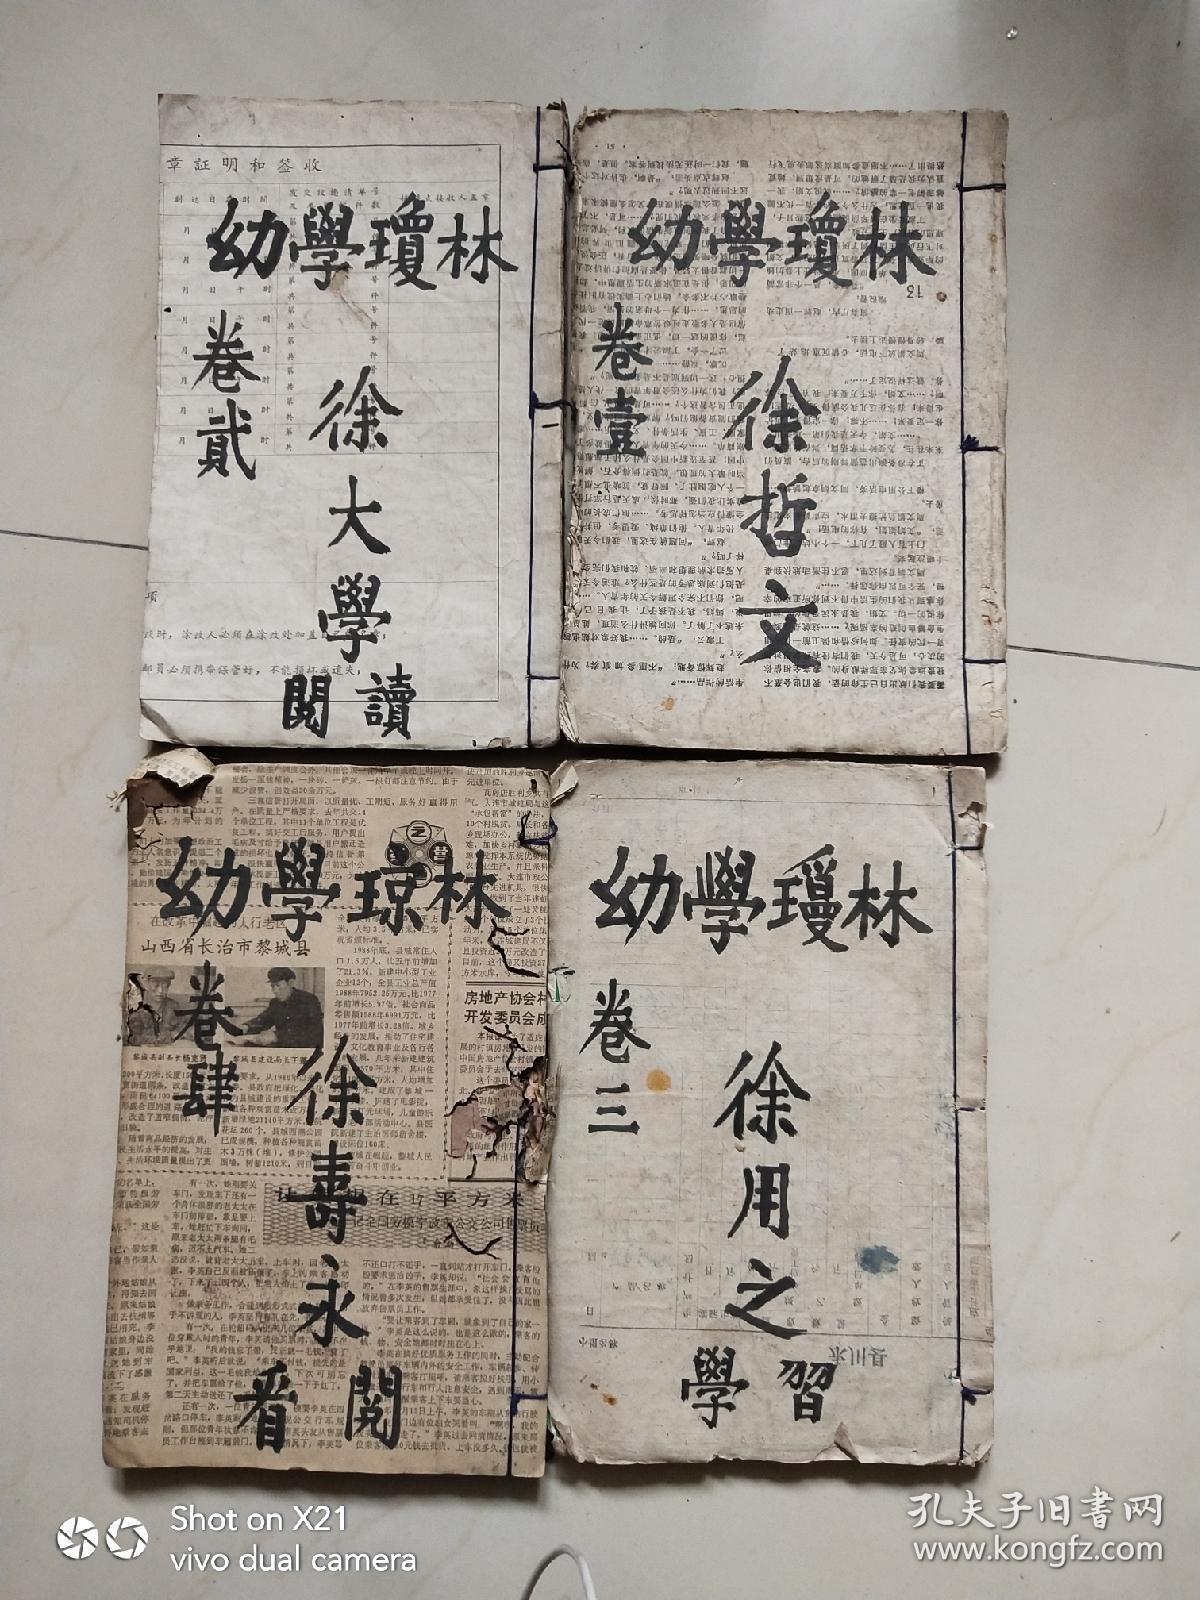 新增幼学故事琼林1－4卷同治八年    (清公元1868年戊辰同治七年 公元年